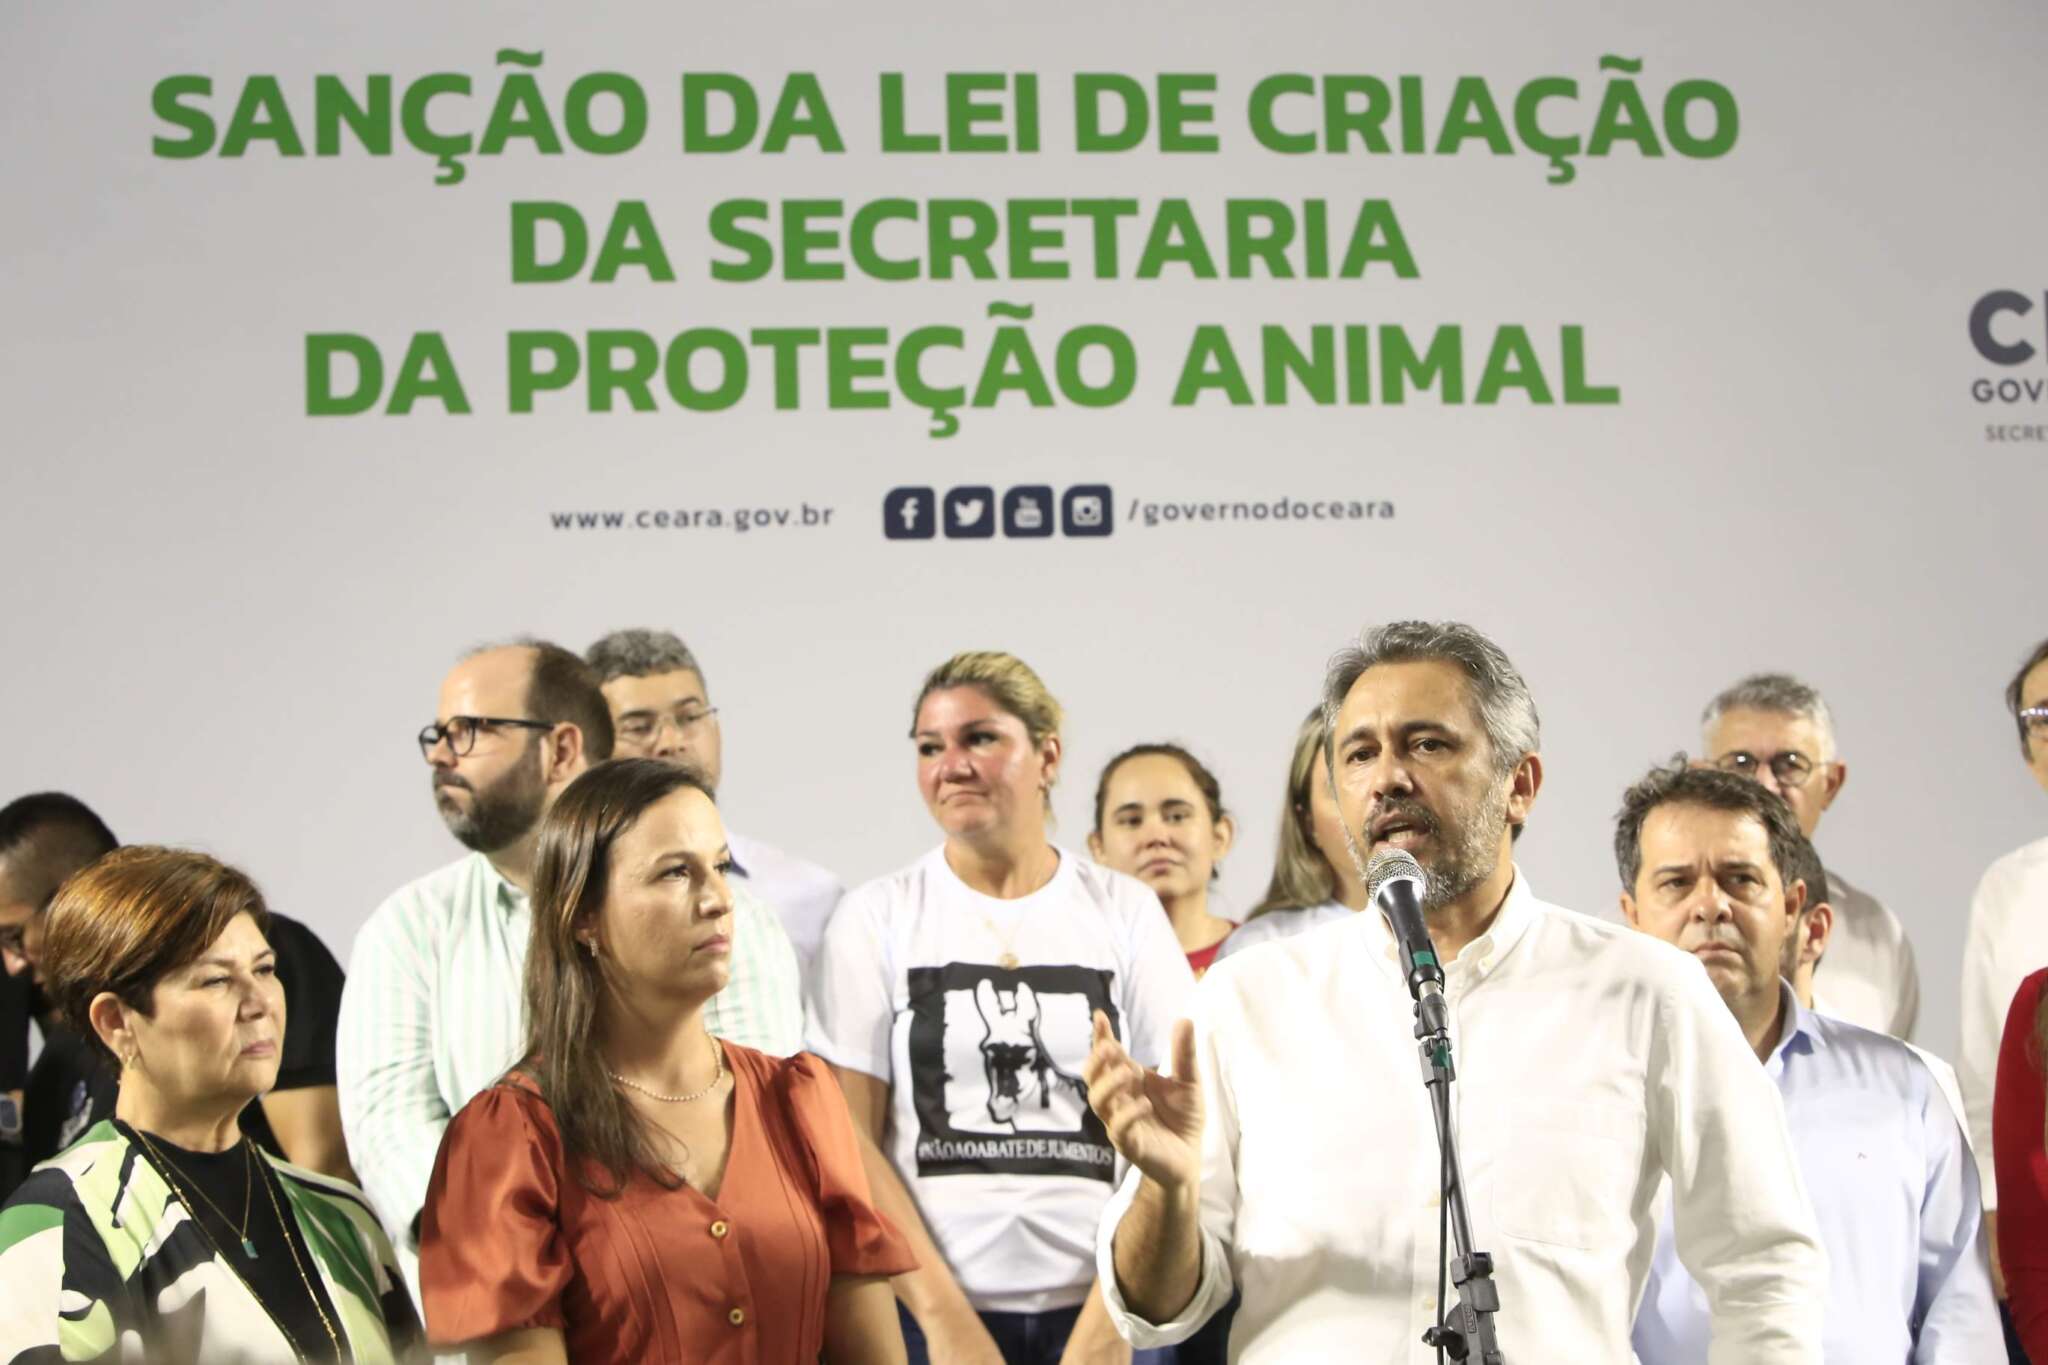 Elmano sanciona lei que cria Secretaria da Proteção Animal; Pasta segue sem secretário definido